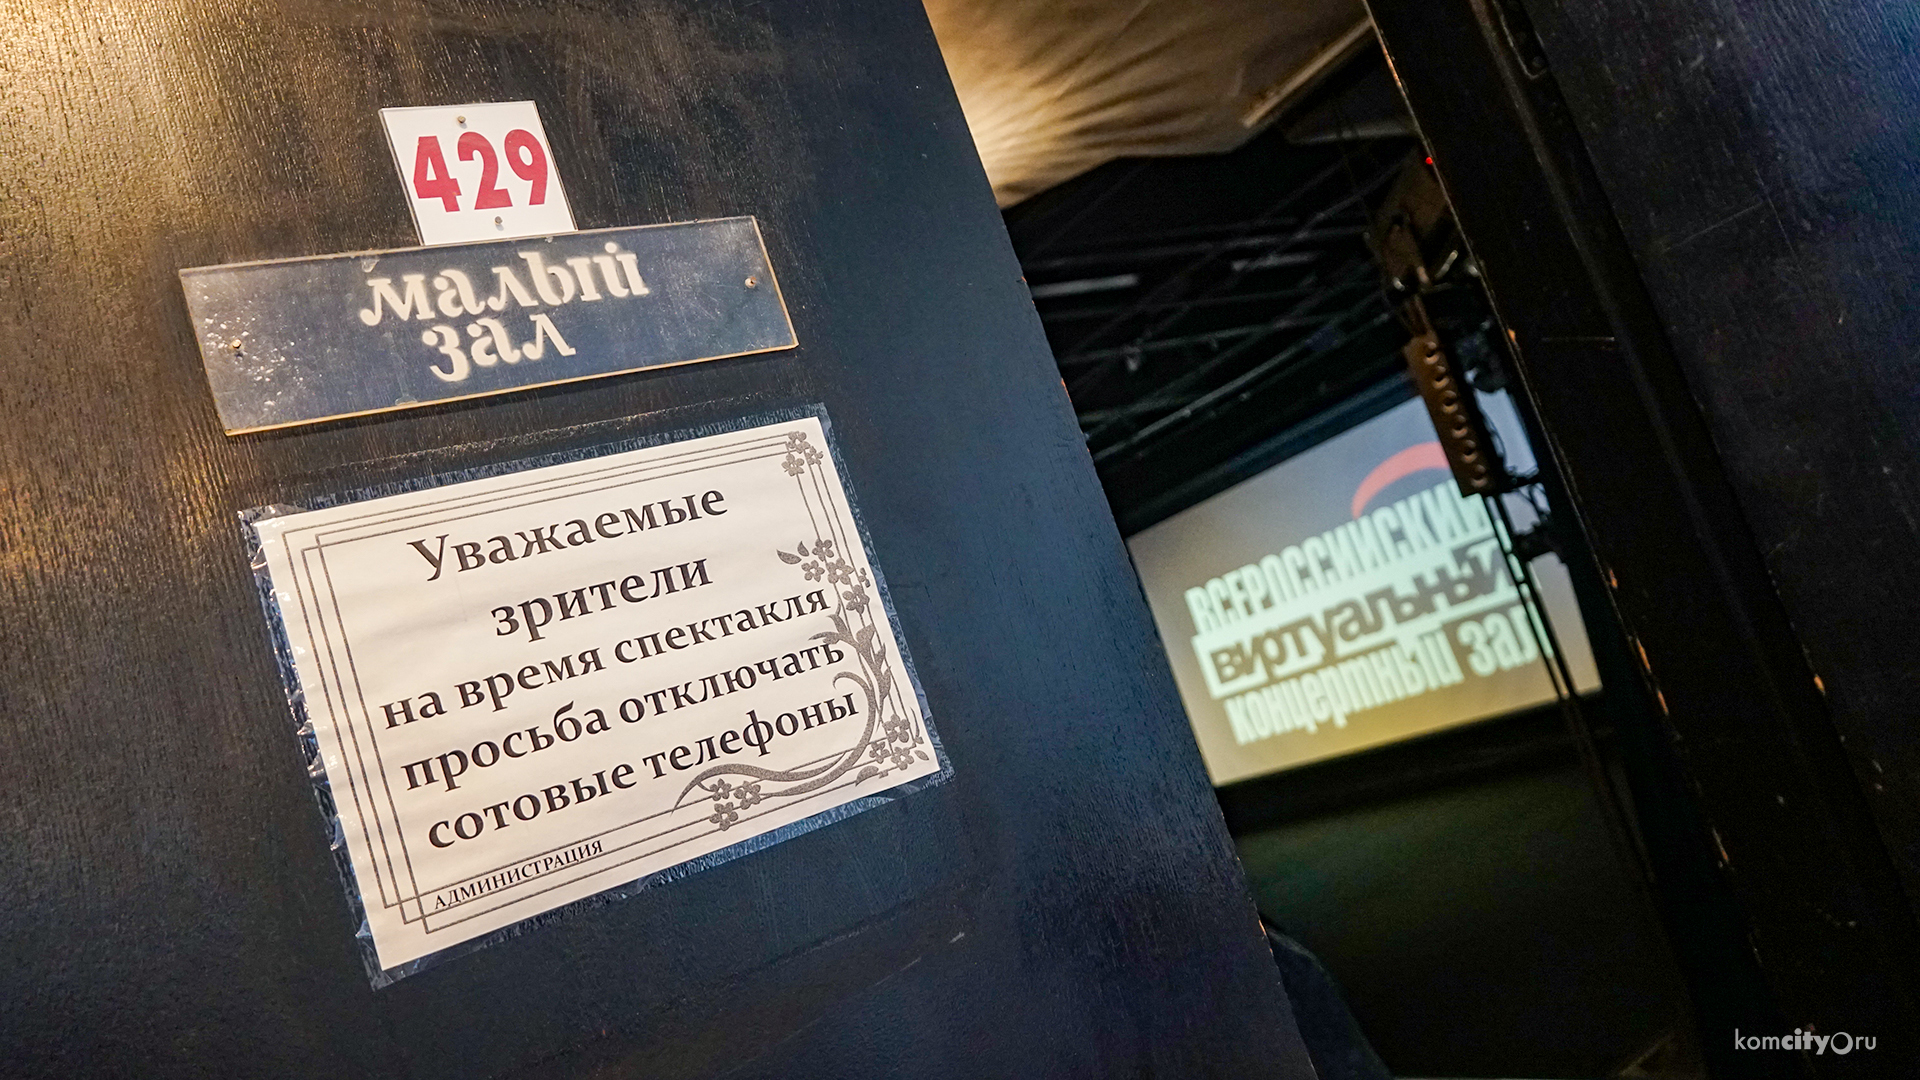 Виртуальный концертный зал открыли в Драмтеатре Комсомольска-на-Амуре